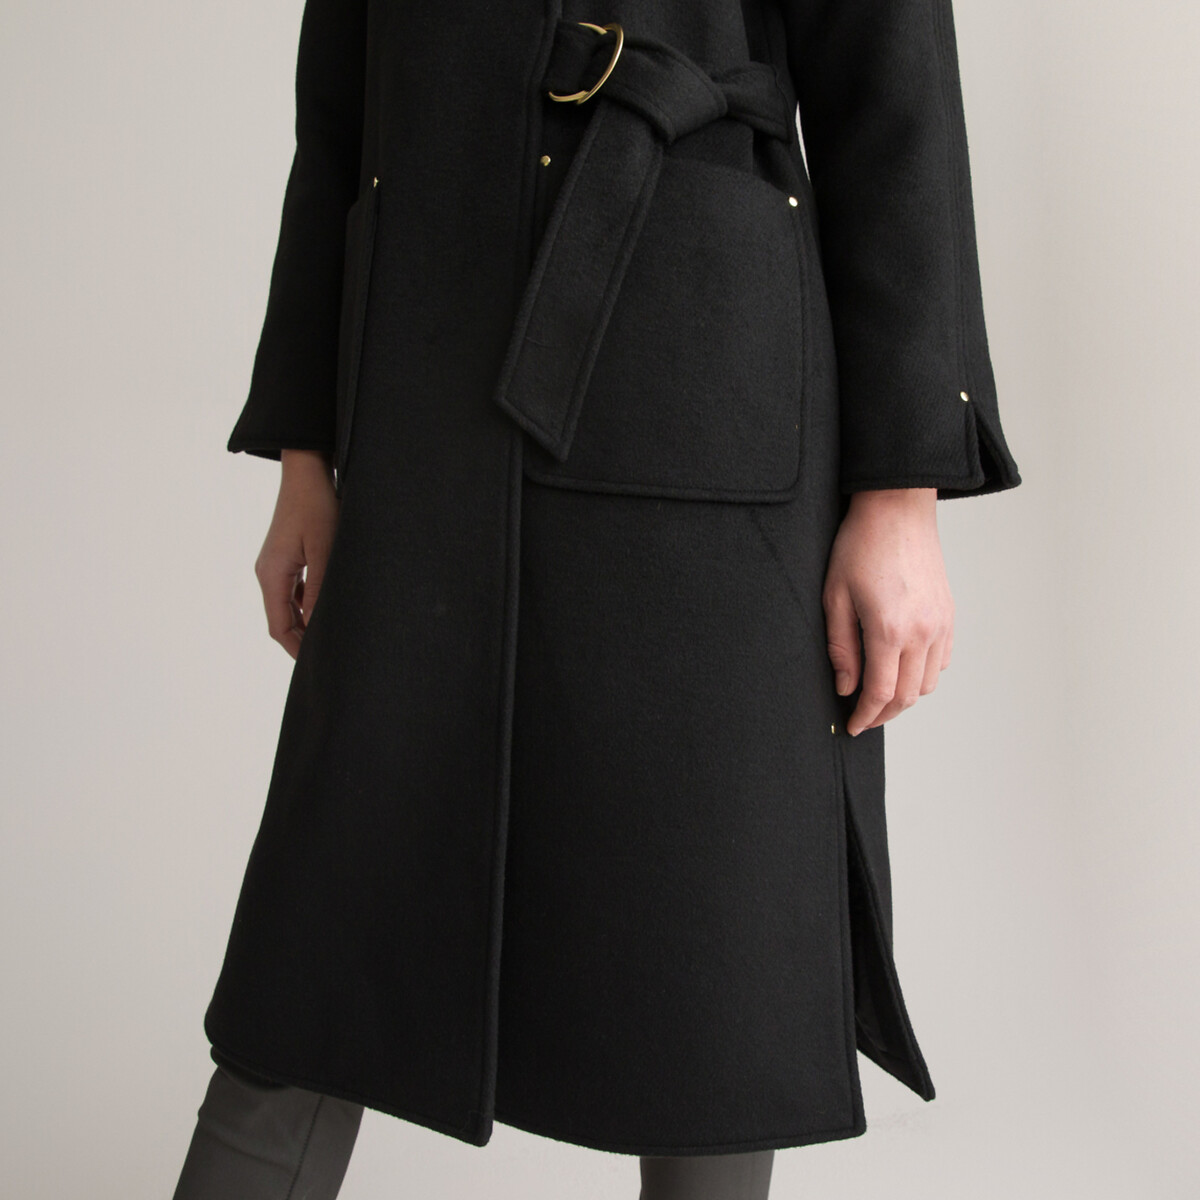 Пальто Длинное асимметричное с завязками 36 (FR) - 42 (RUS) черный LaRedoute, размер 36 (FR) - 42 (RUS) Пальто Длинное асимметричное с завязками 36 (FR) - 42 (RUS) черный - фото 3